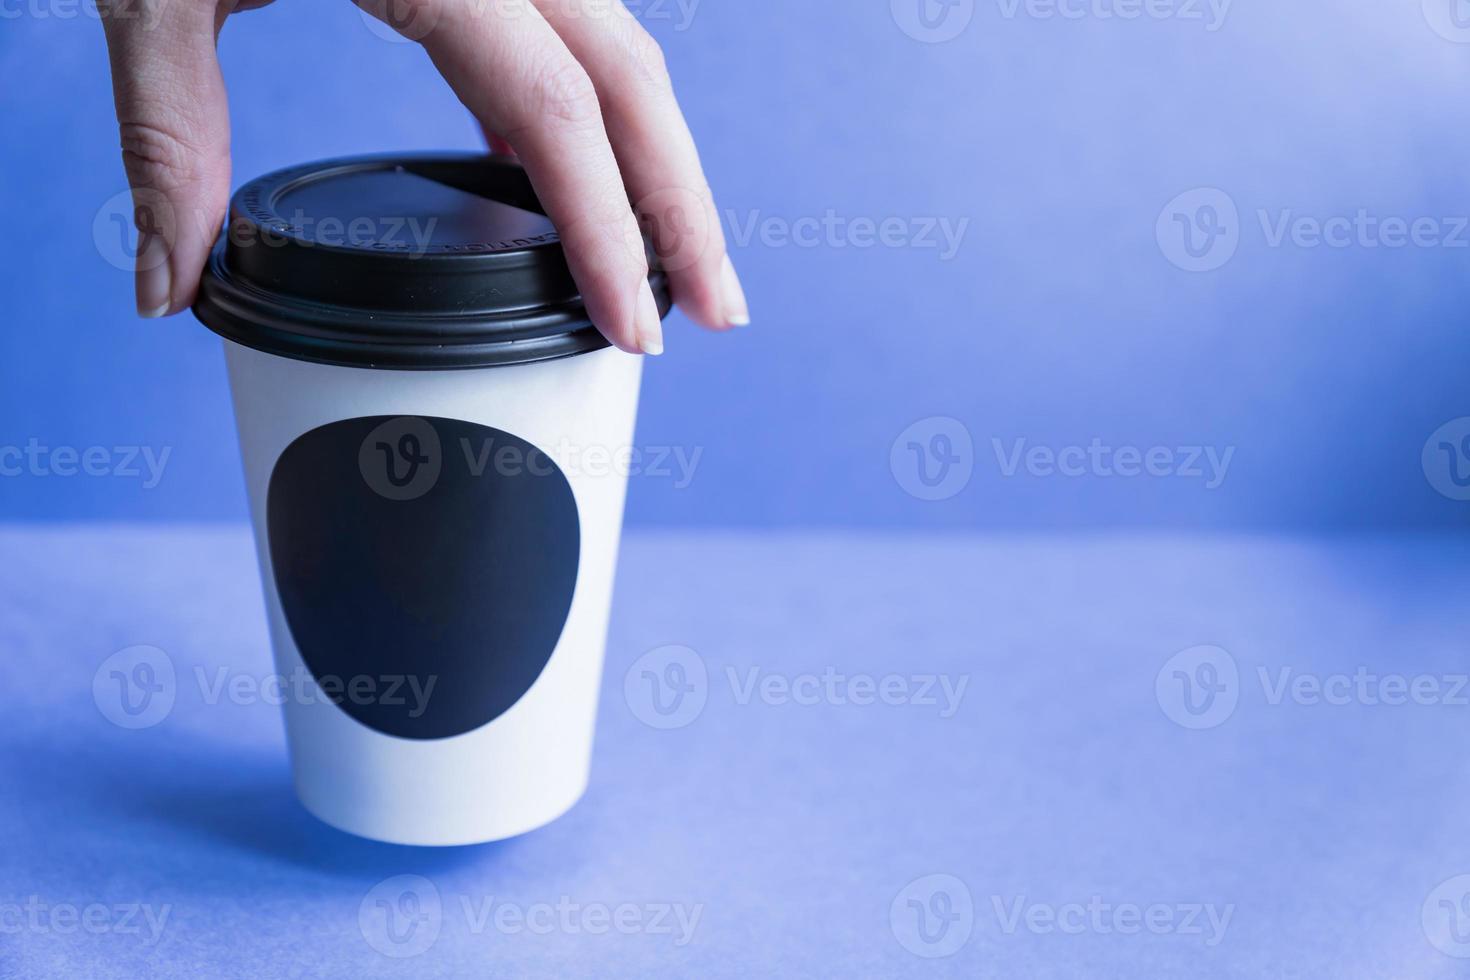 Couvercle jetable pour gobelet à café - Couvercle en plastique pour boisson  froide, Fabricant de fourchettes et cuillères compostables Made in Taiwan